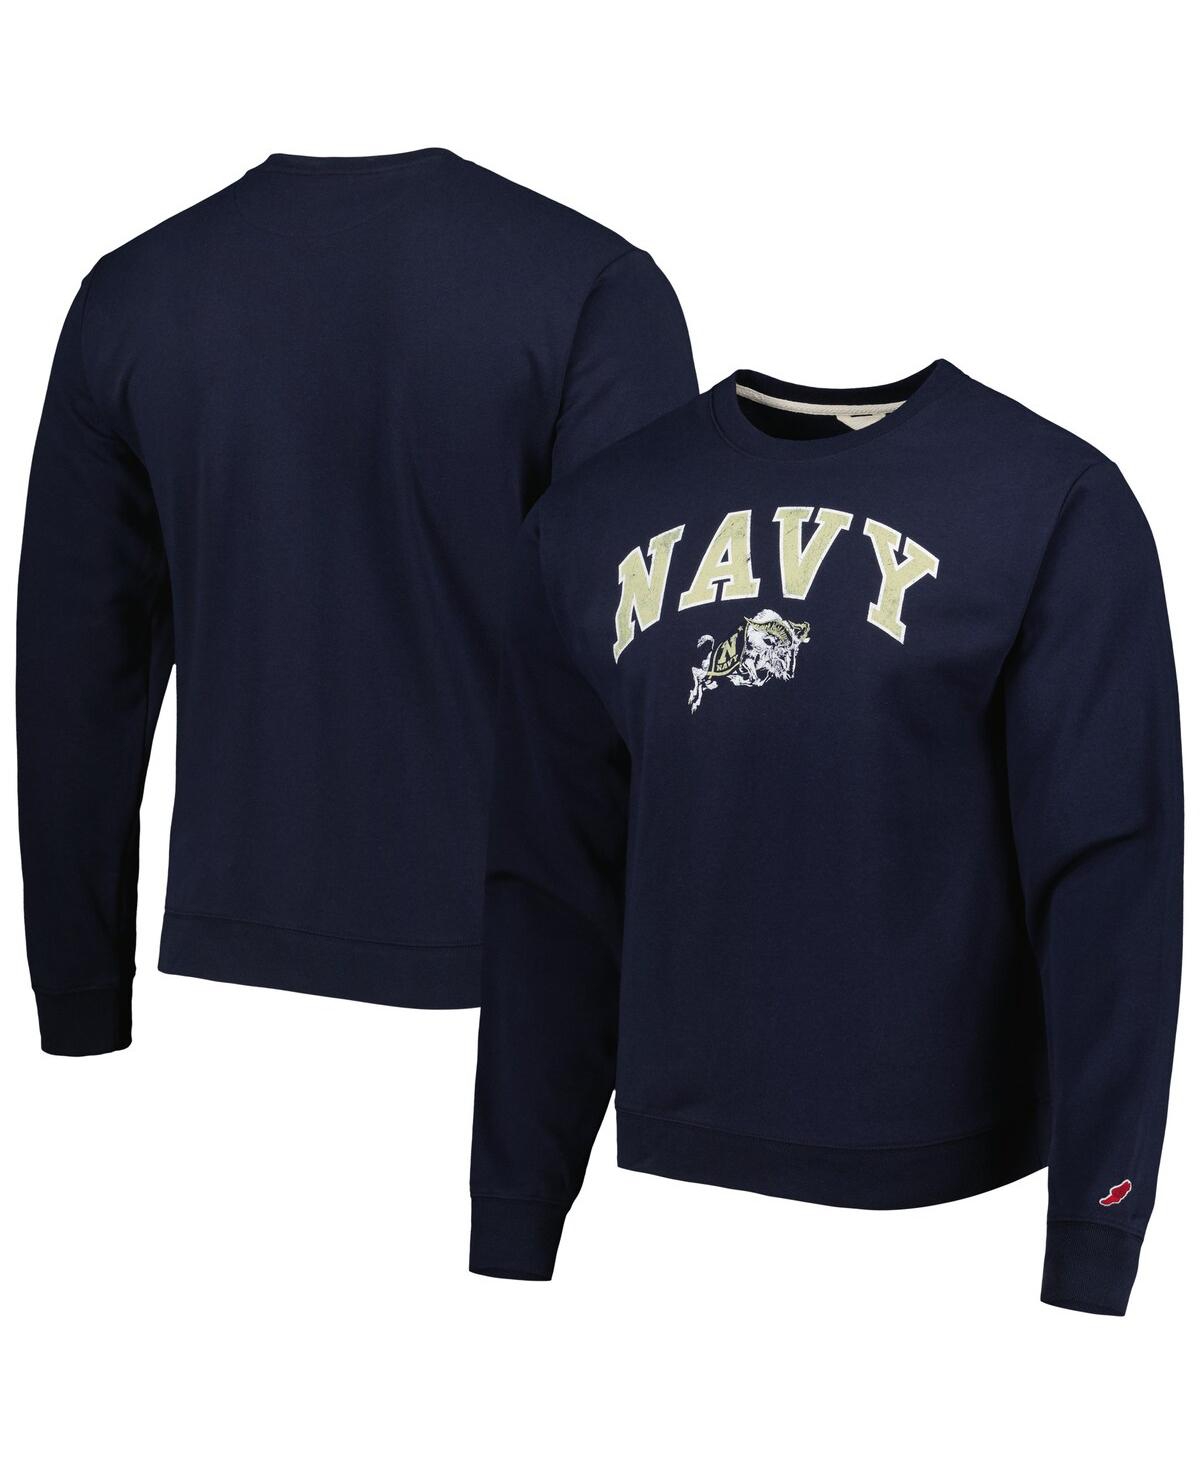 Men's League Collegiate Wear Navy Navy Midshipmen 1965 Arch Essential Fleece Pullover Sweatshirt - Navy